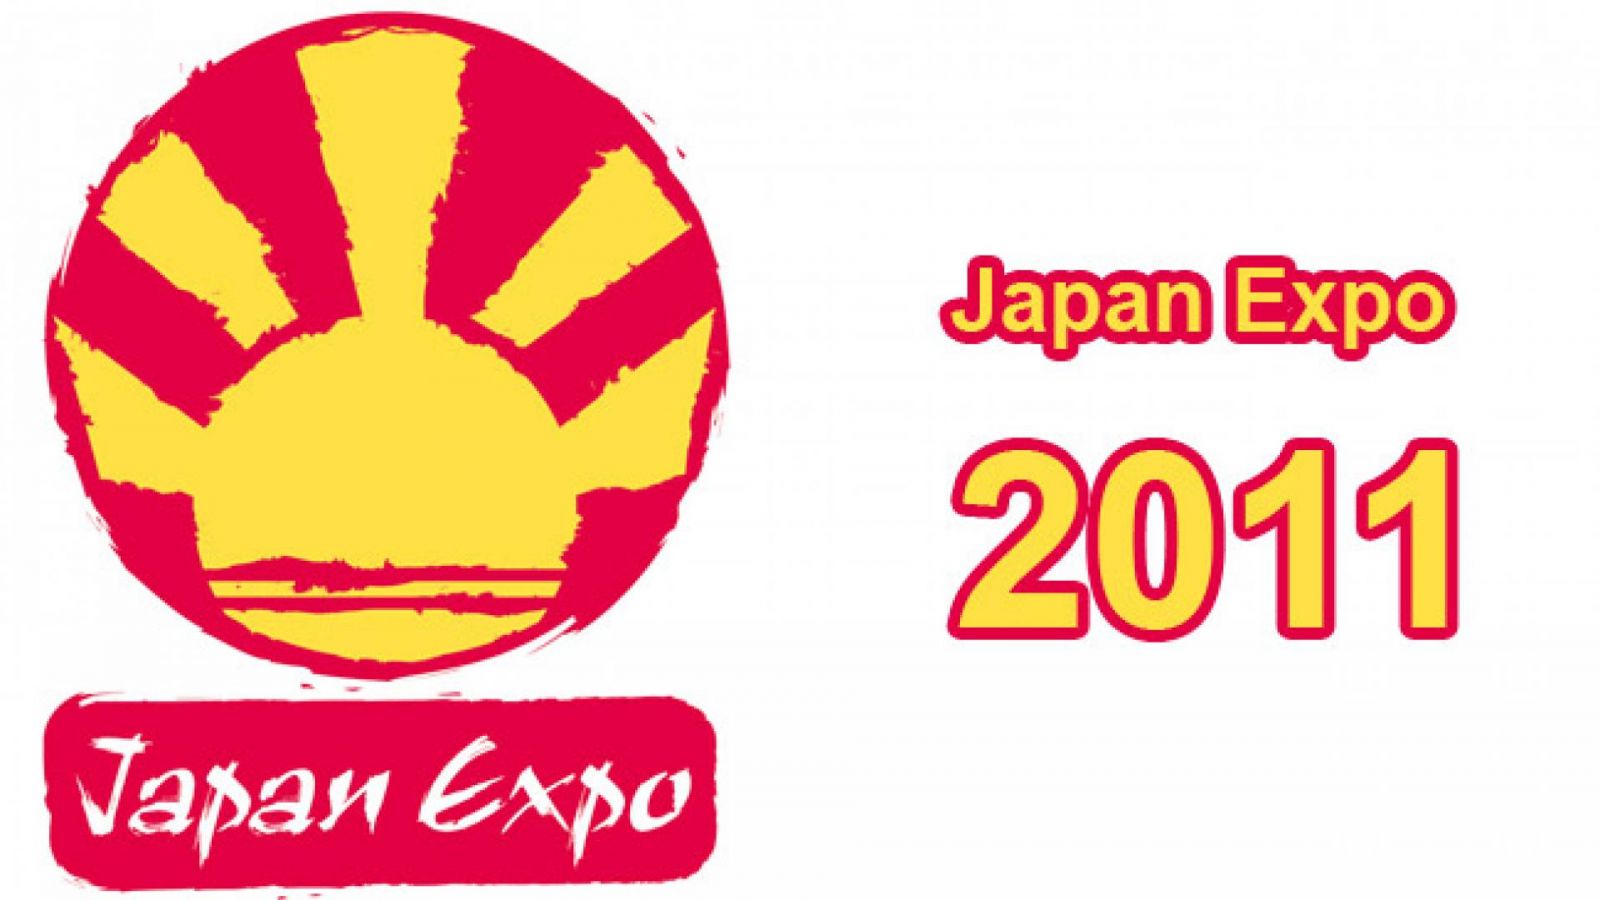 Japan Expo acontecerá nesta semana em Paris © SEFA